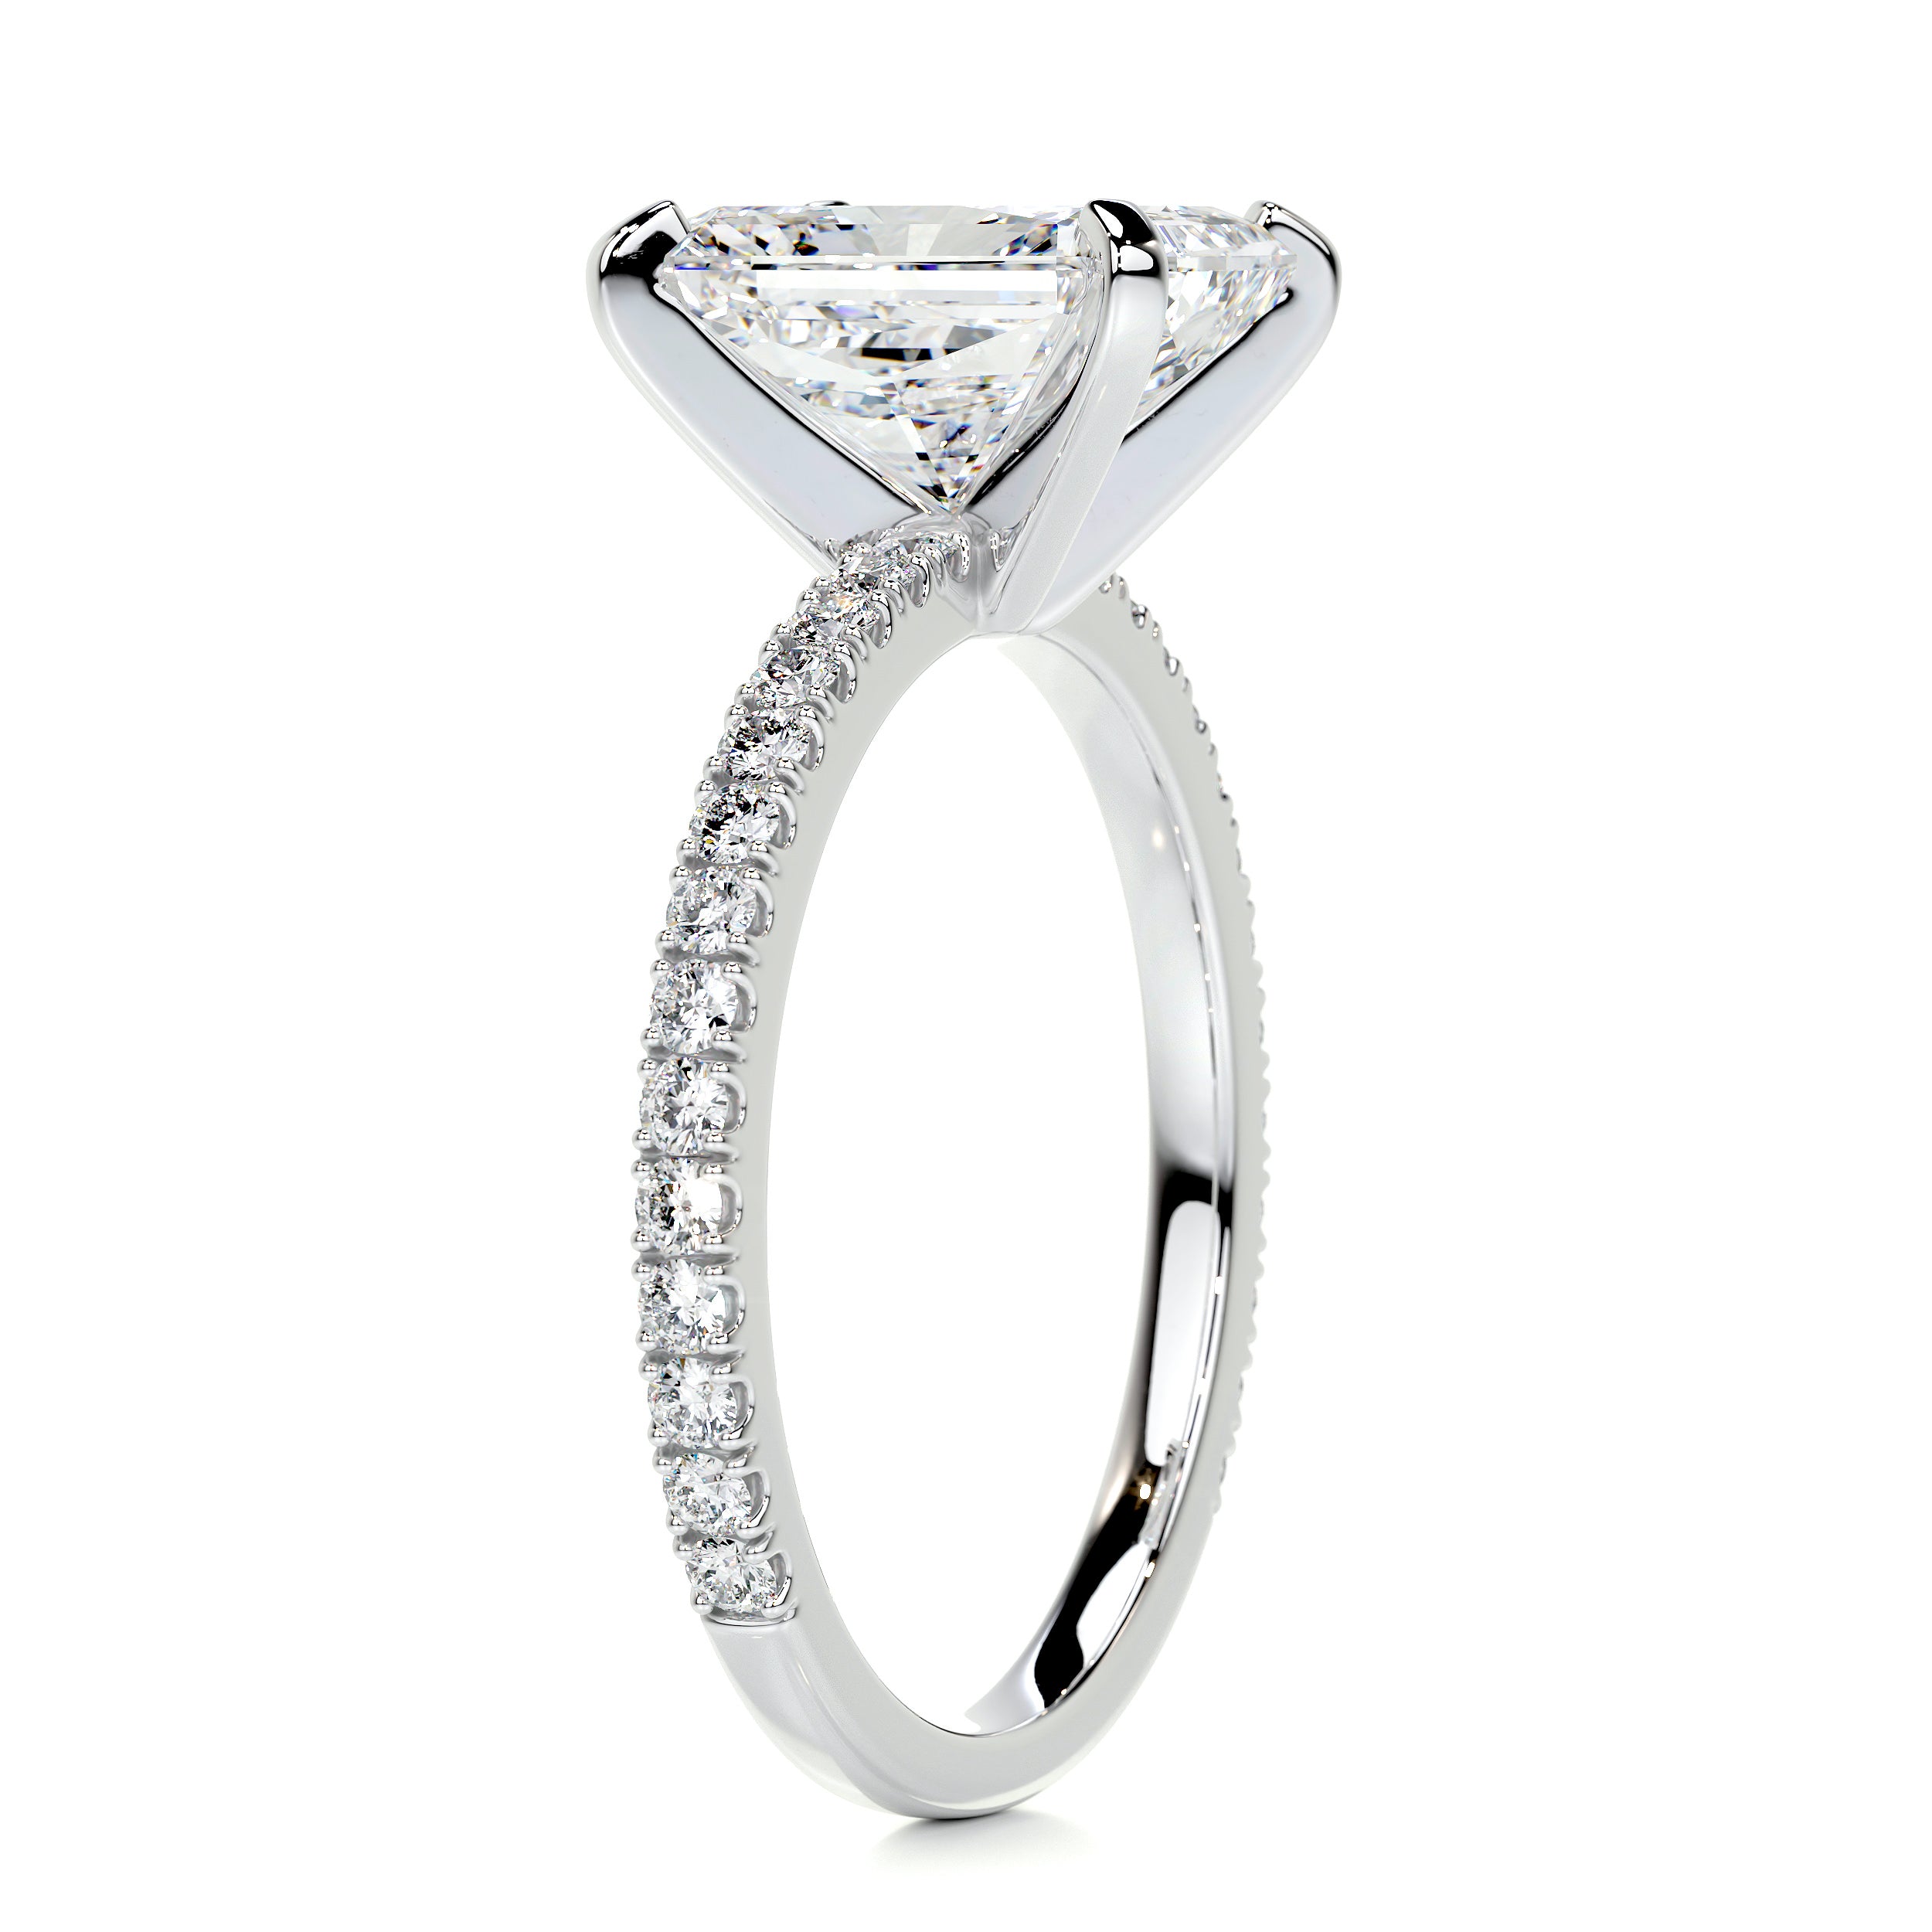 Audrey Diamond Engagement Ring   (3.30 Carat) -14K White Gold